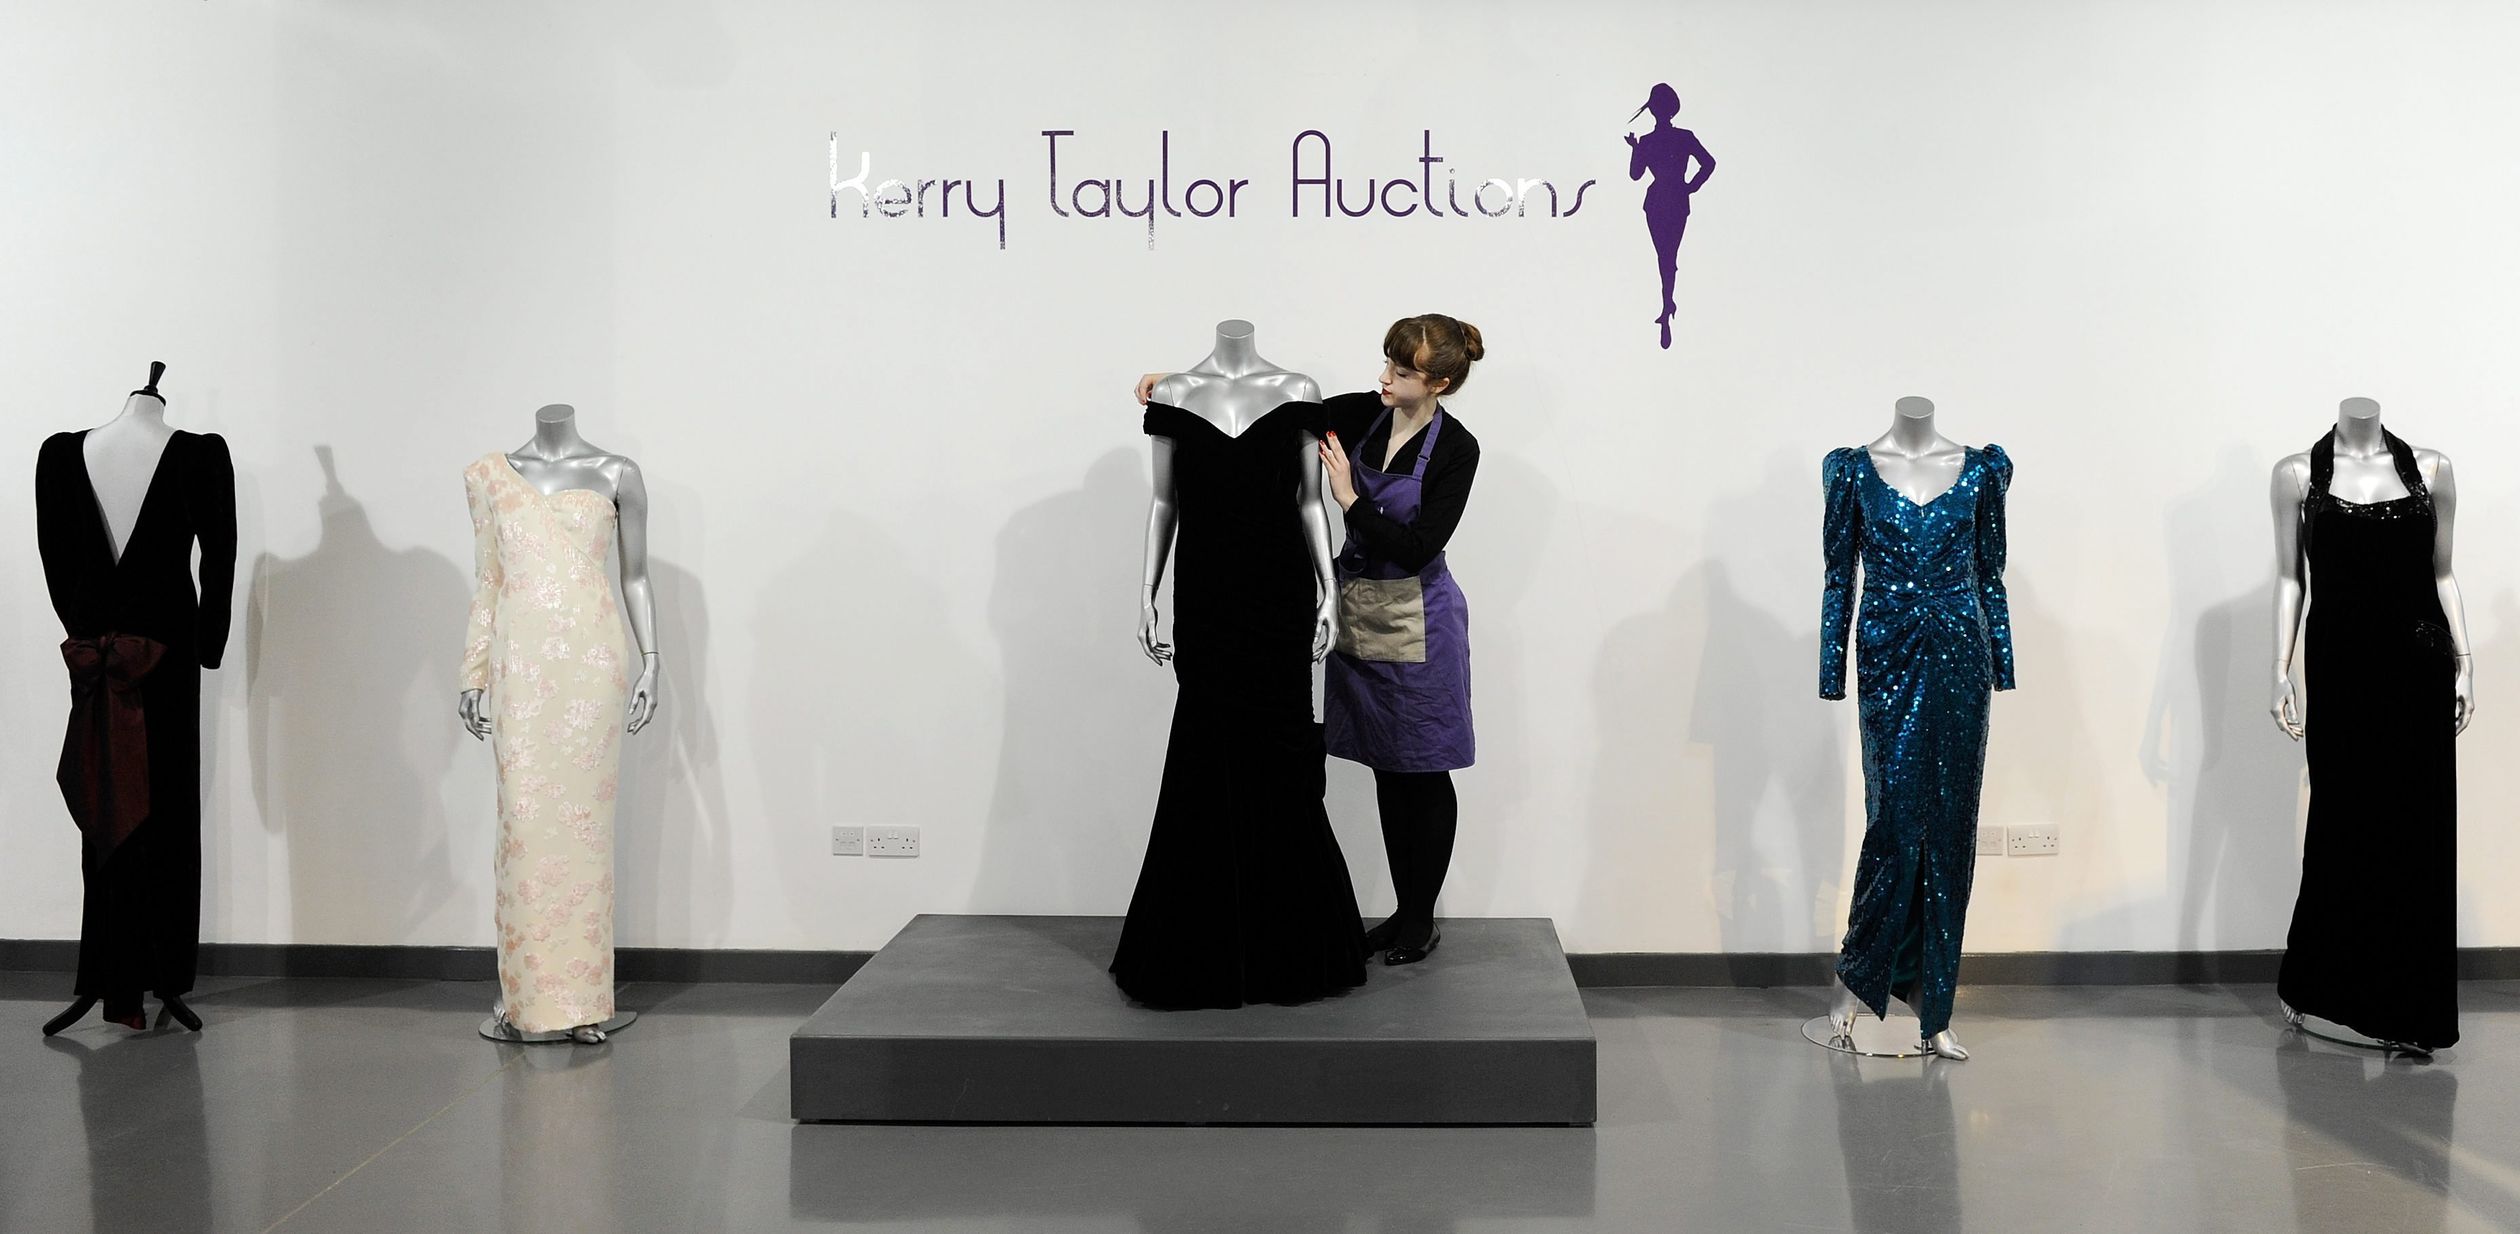 De jurk op een veiling vorig jaar in Londen, in het Kerry Taylor Auction house London.